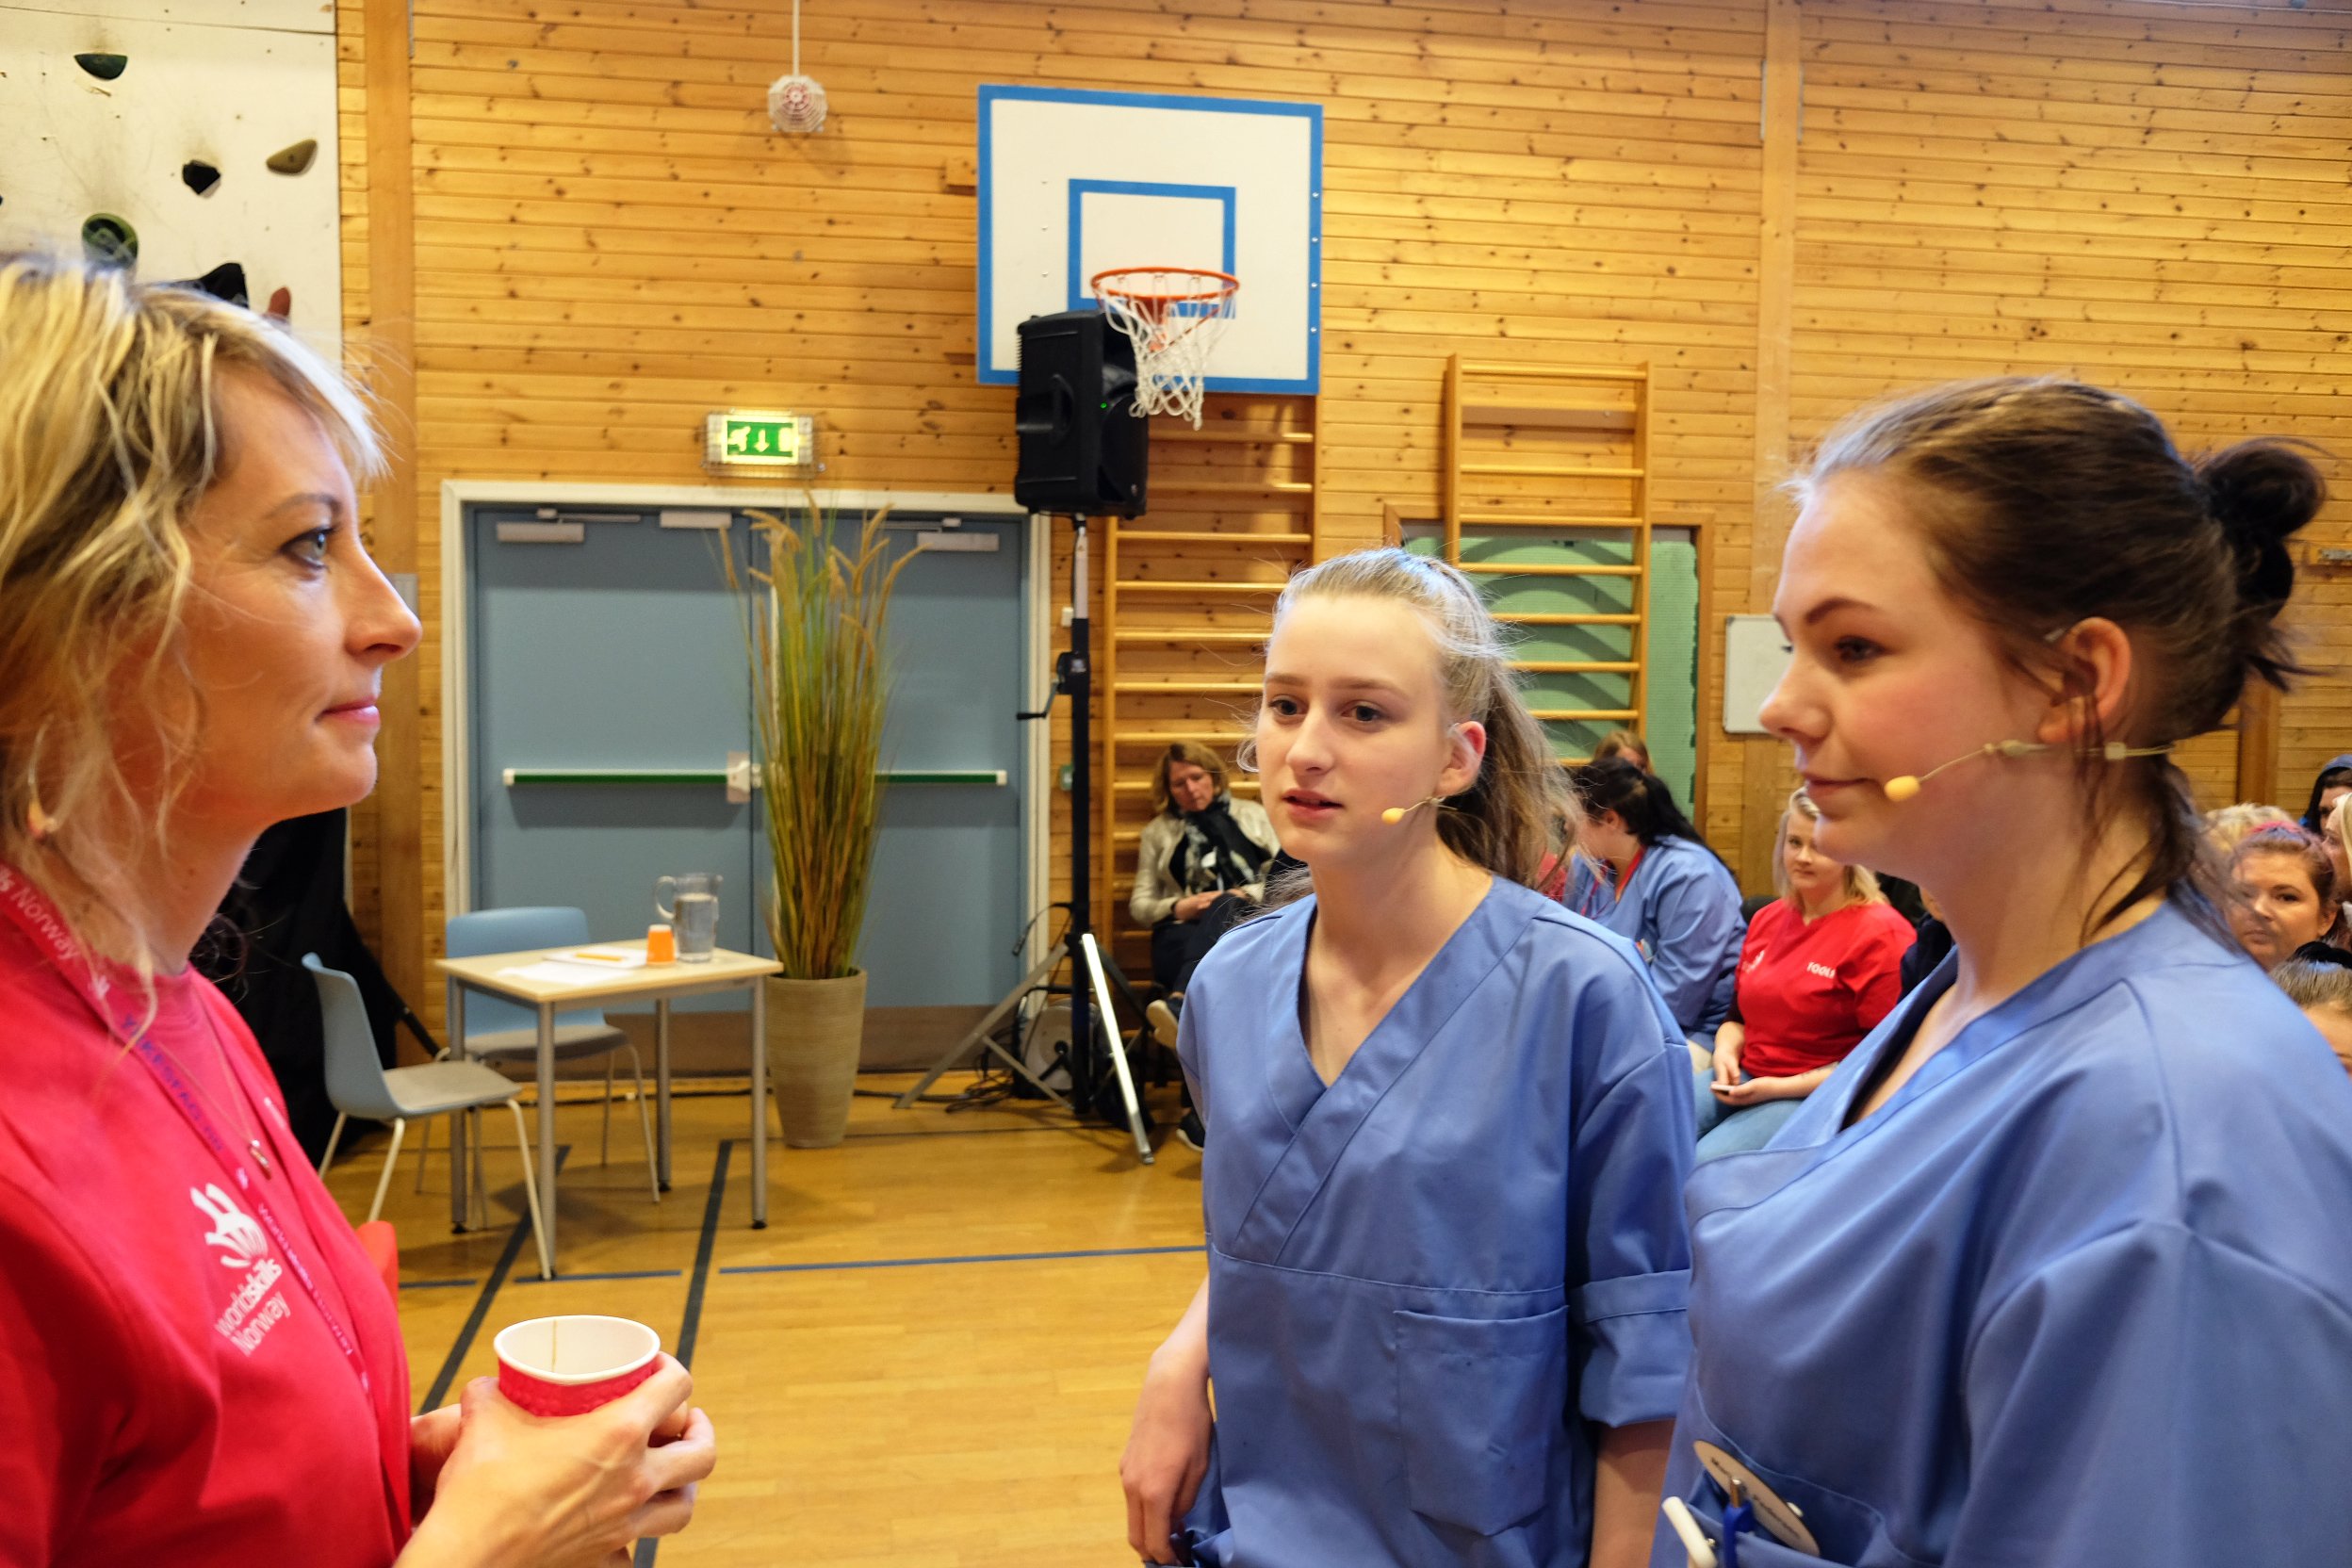 Kontaktlærer Ragnhild Folkvord gir de siste råd til opplendingene Trine Sønsteby og Marie Hellum Pedersen før de skal konkurrere i årets Skole-NM på Lillehammer. Jentene er dypt konsentrerte. Stemningen er spent.